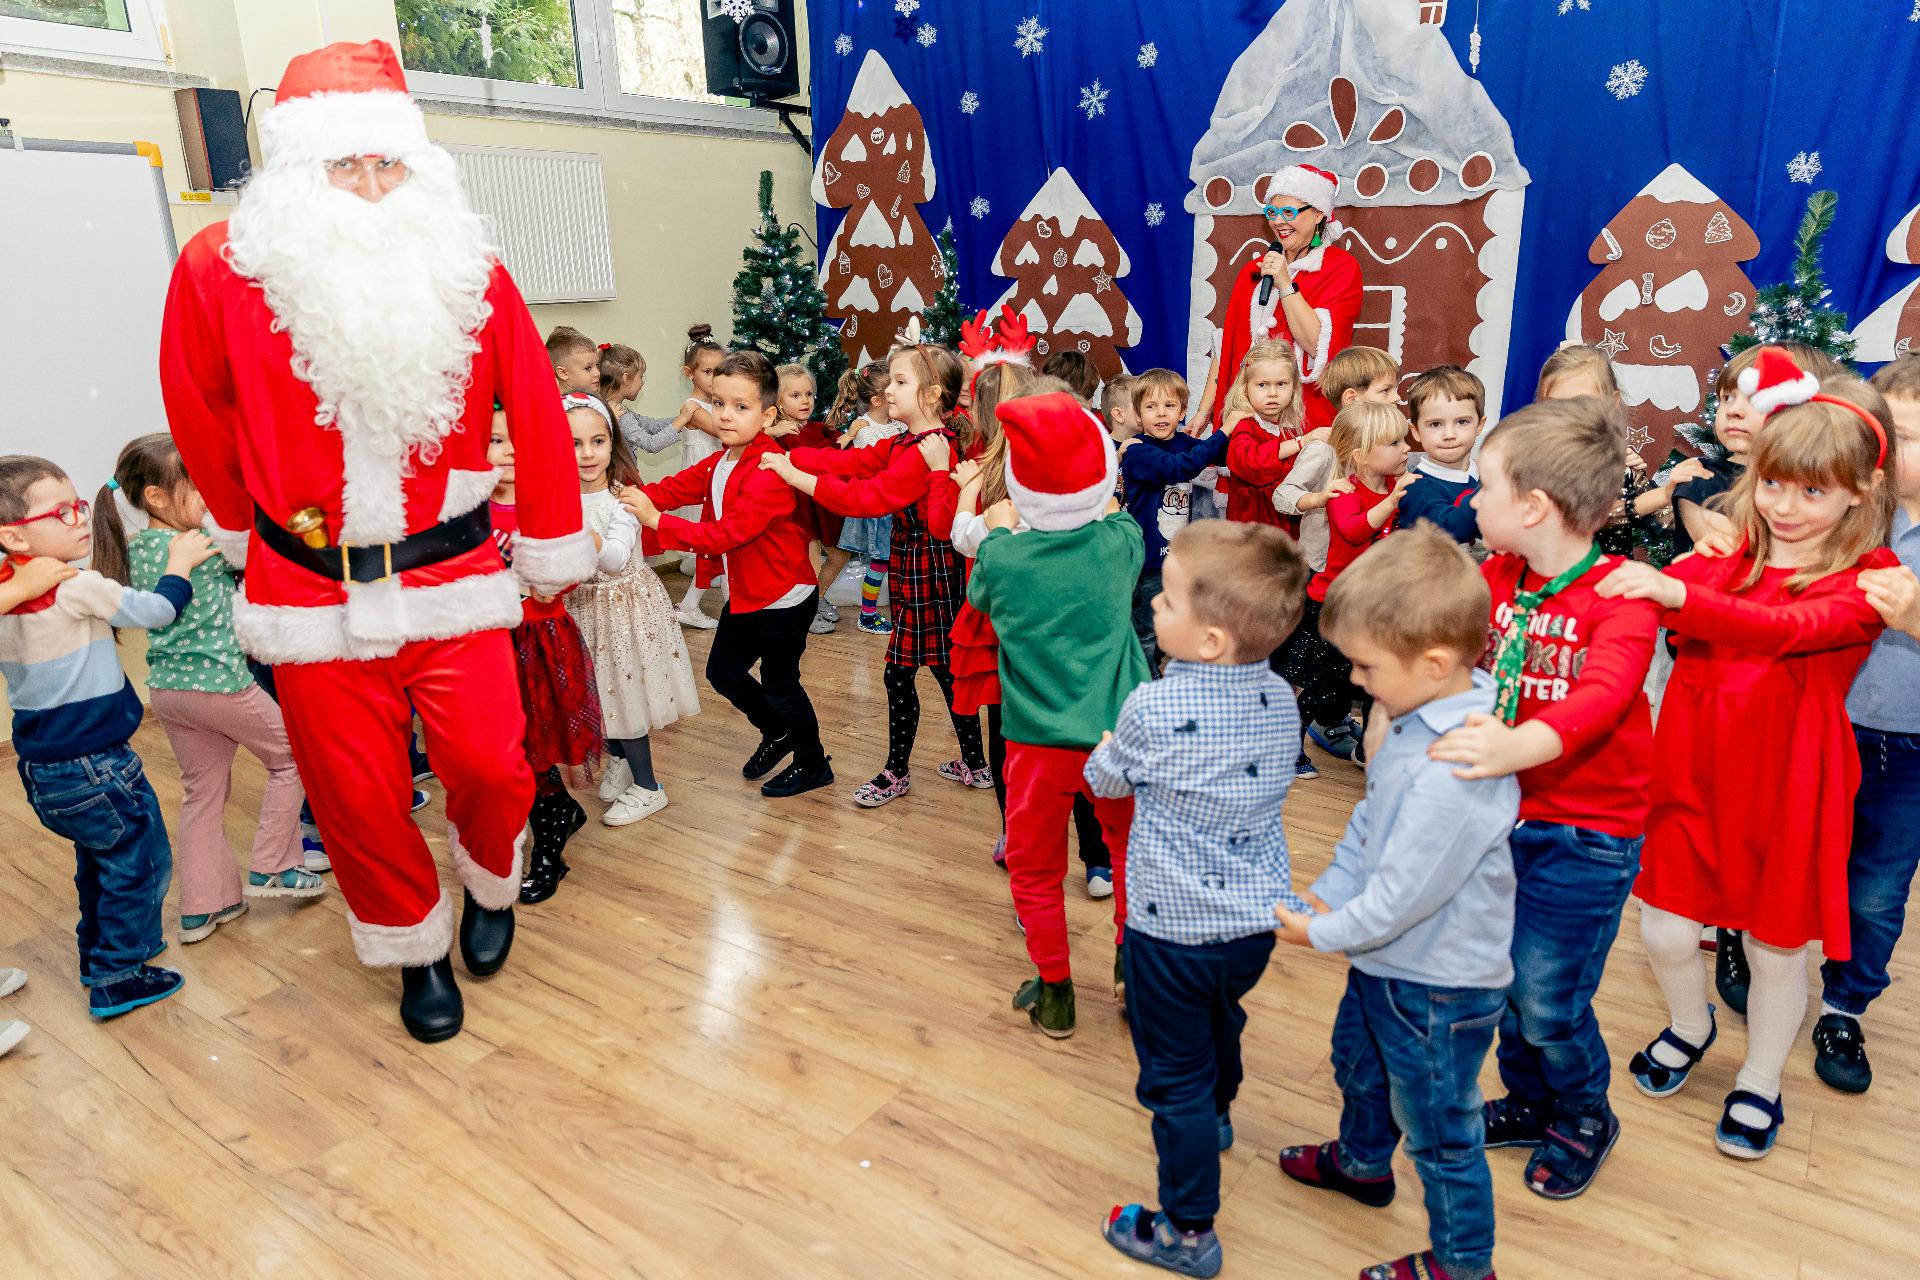 Bawiące się dzieci podczas zabawy tanecznej z Mikołajem.